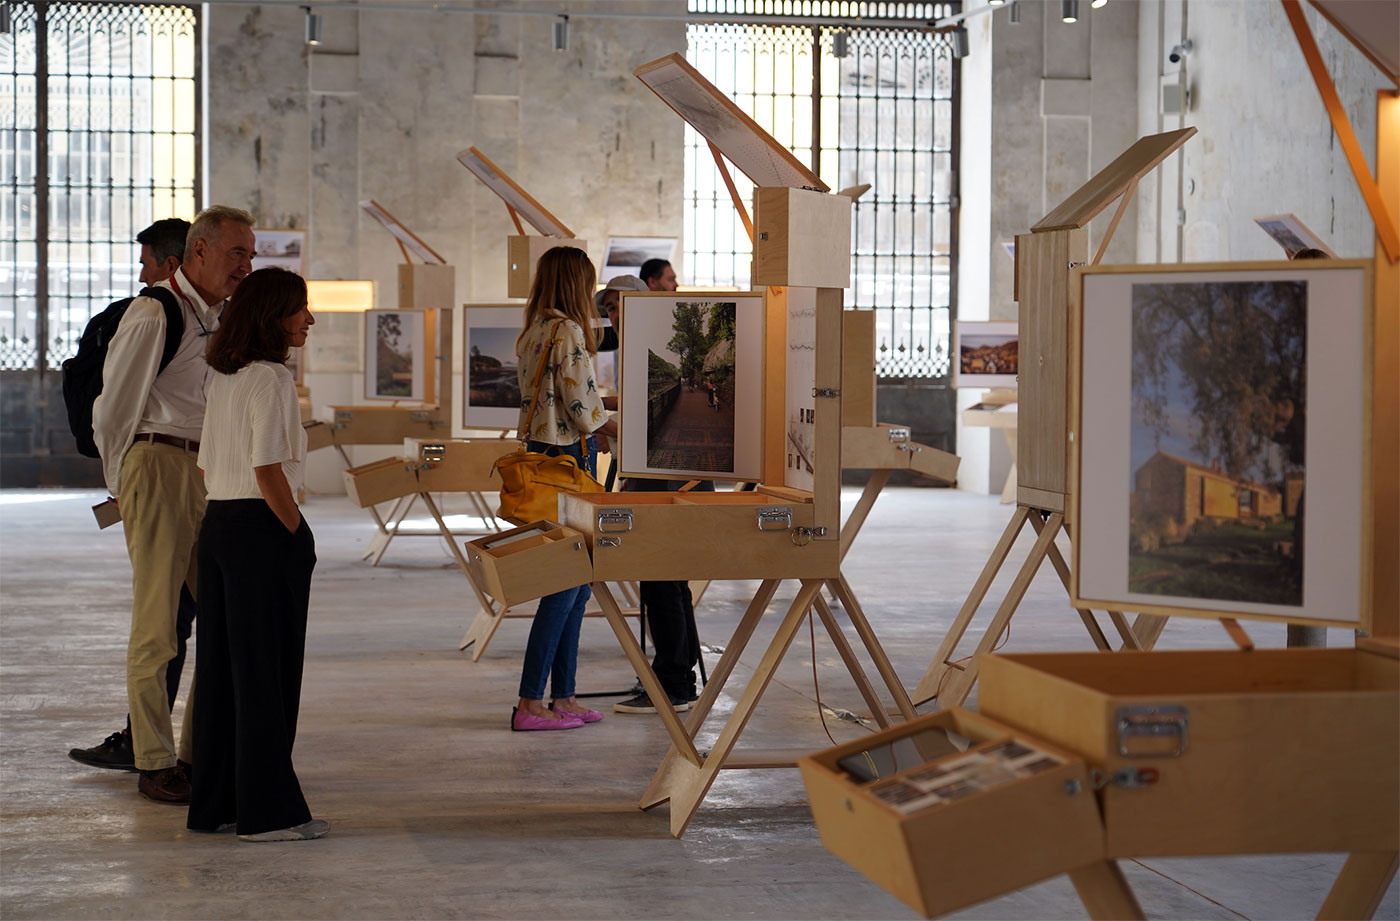 La XVI Bienal Española de Arquitectura y Urbanismo abre sus puertas en la Real Fábrica de Artillería de Sevilla El fururo de la arquitectura a Me–dio Pla–zo